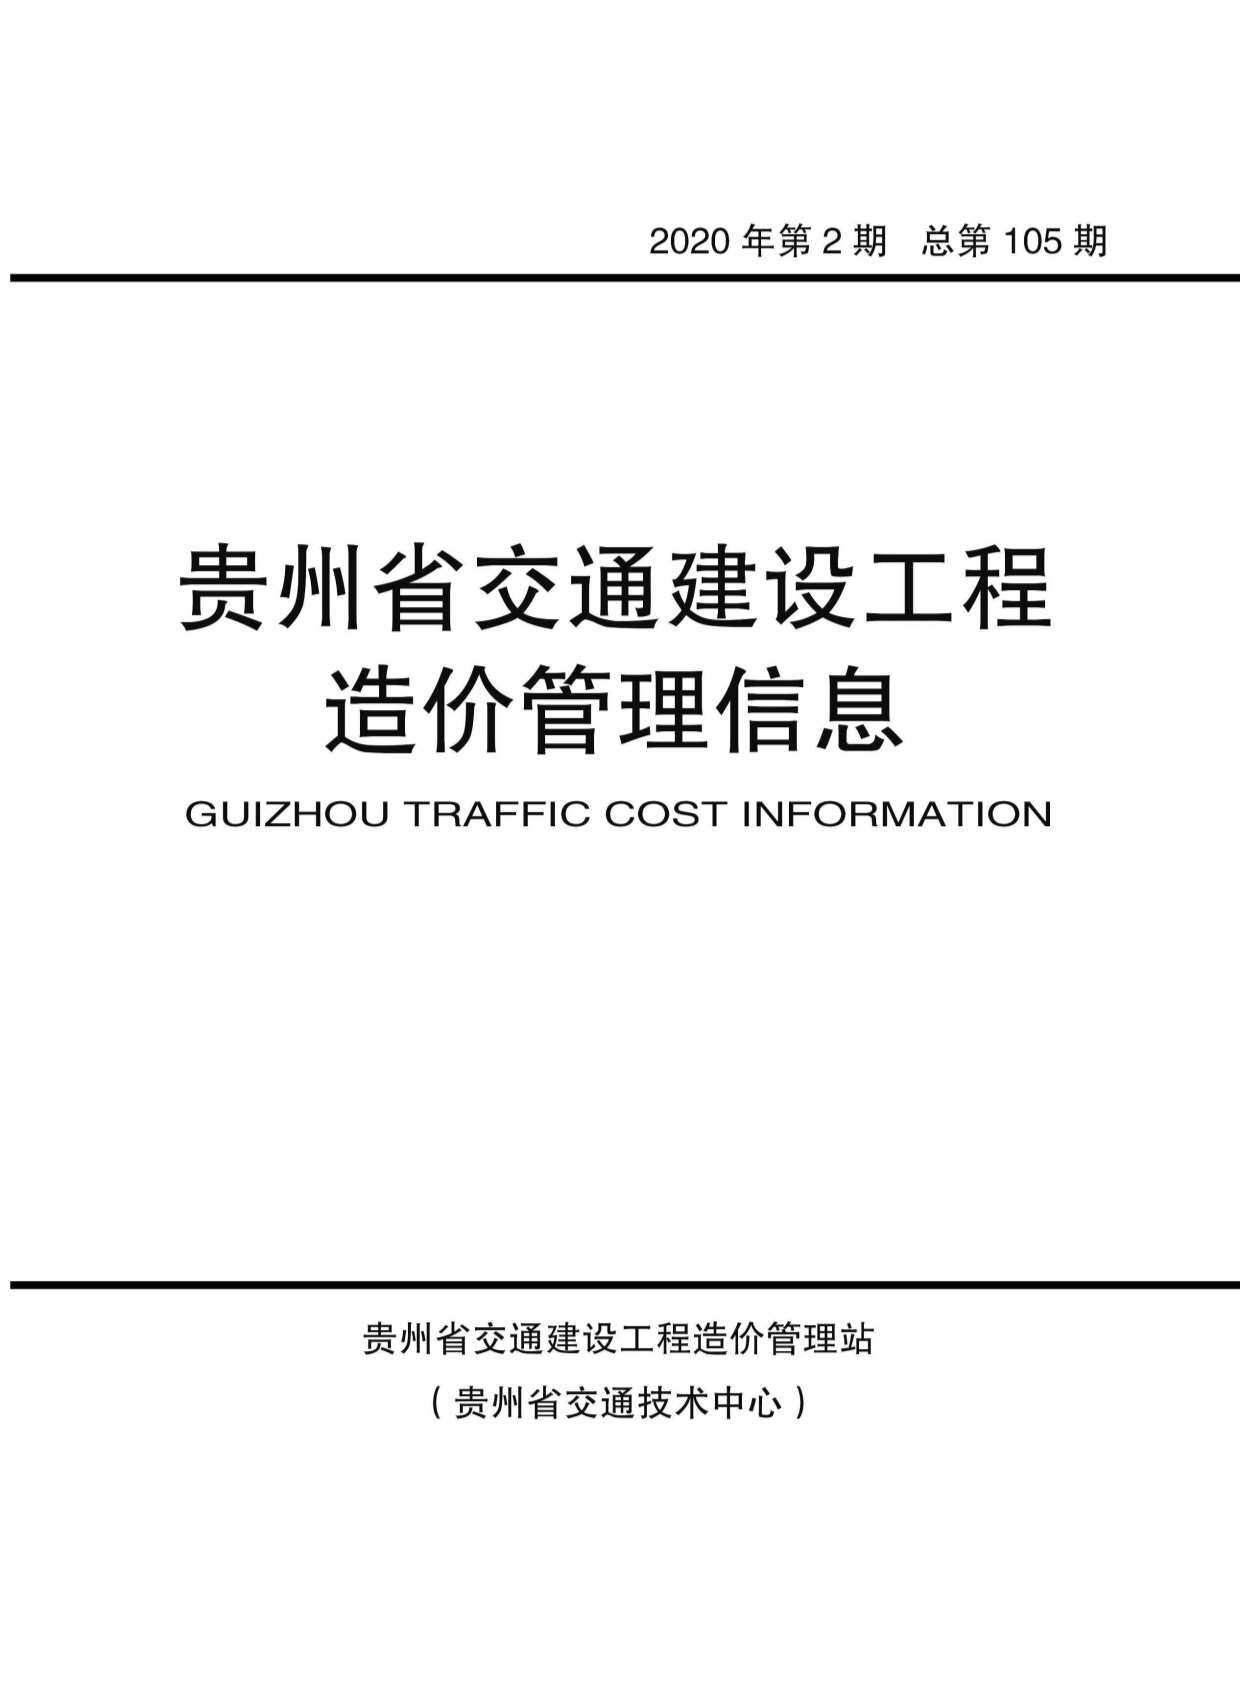 贵州省2020年2月交通工程造价信息期刊